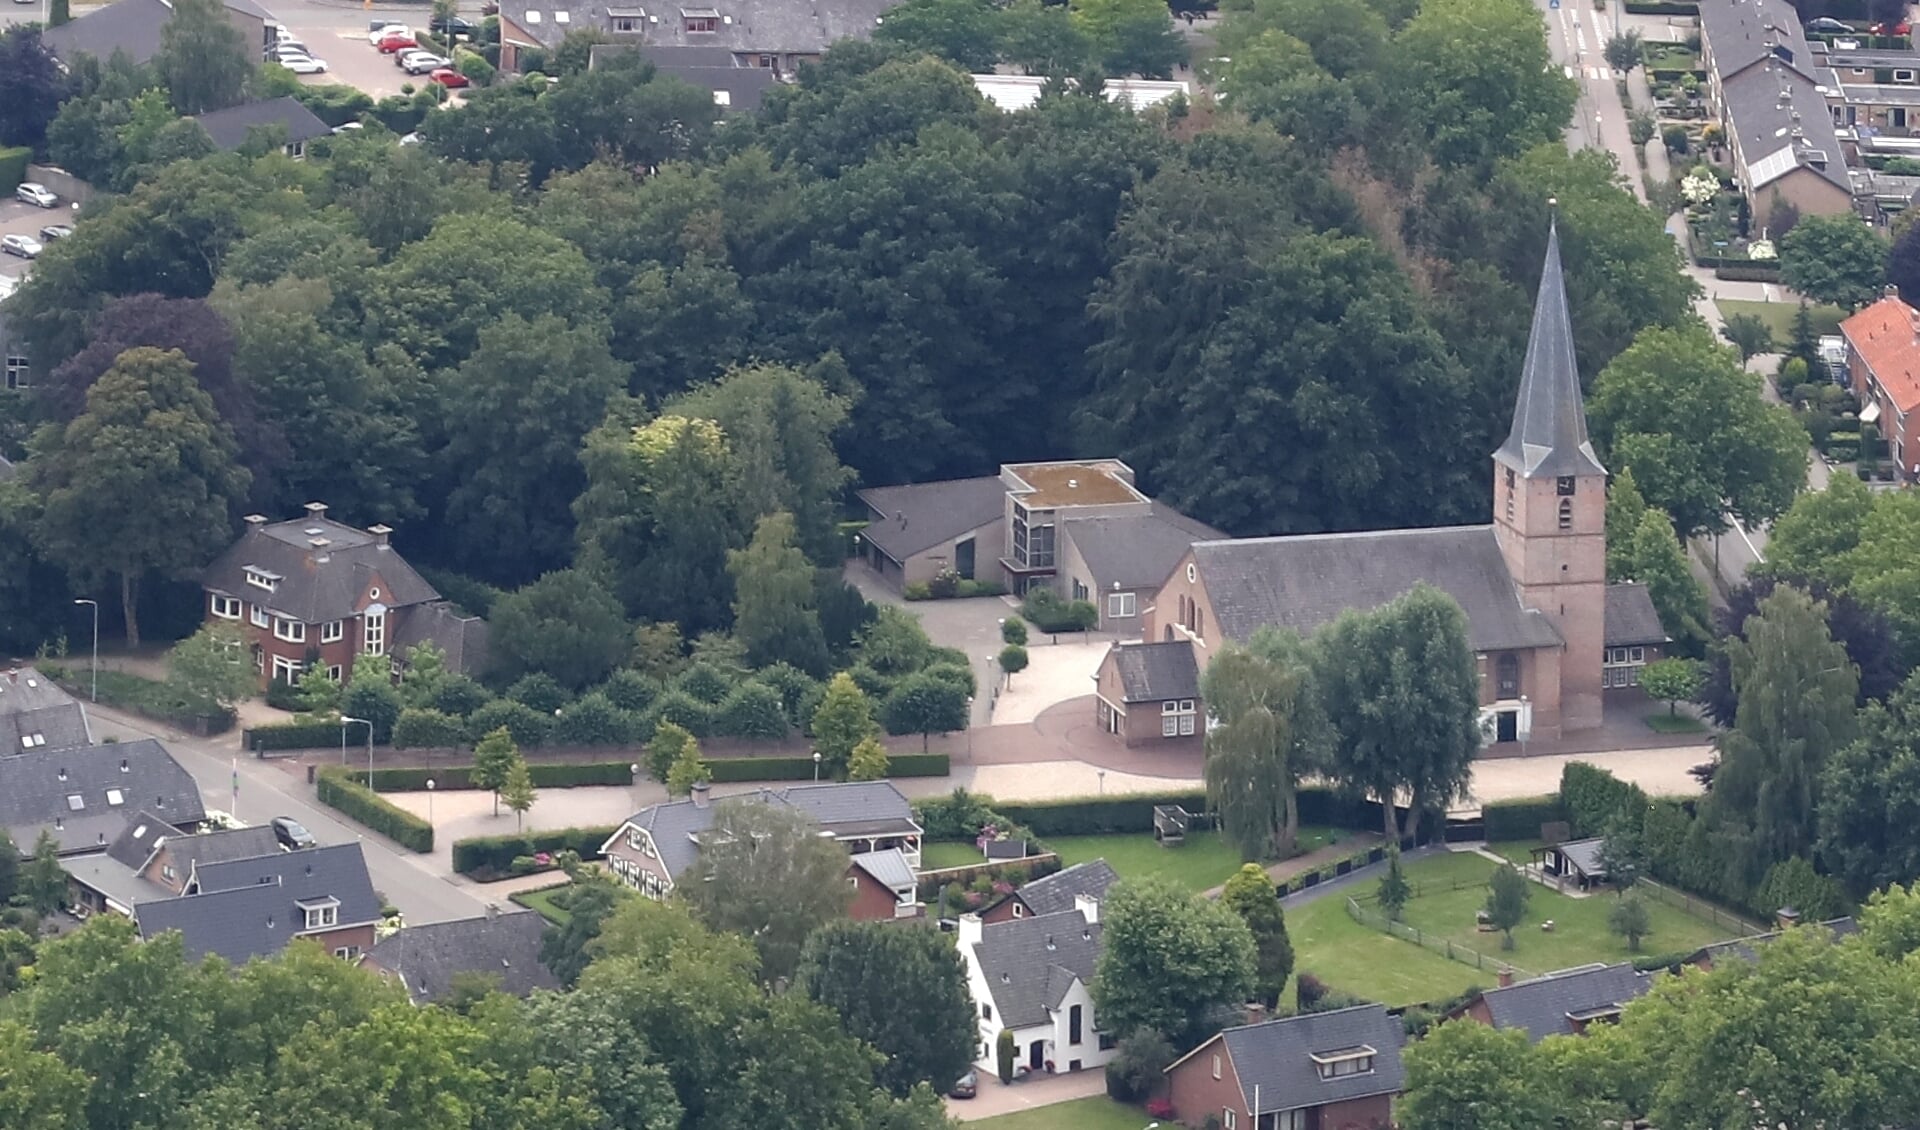 De tuin van de voormalige pastorie van de Dorpskerk heeft een monumentale status.